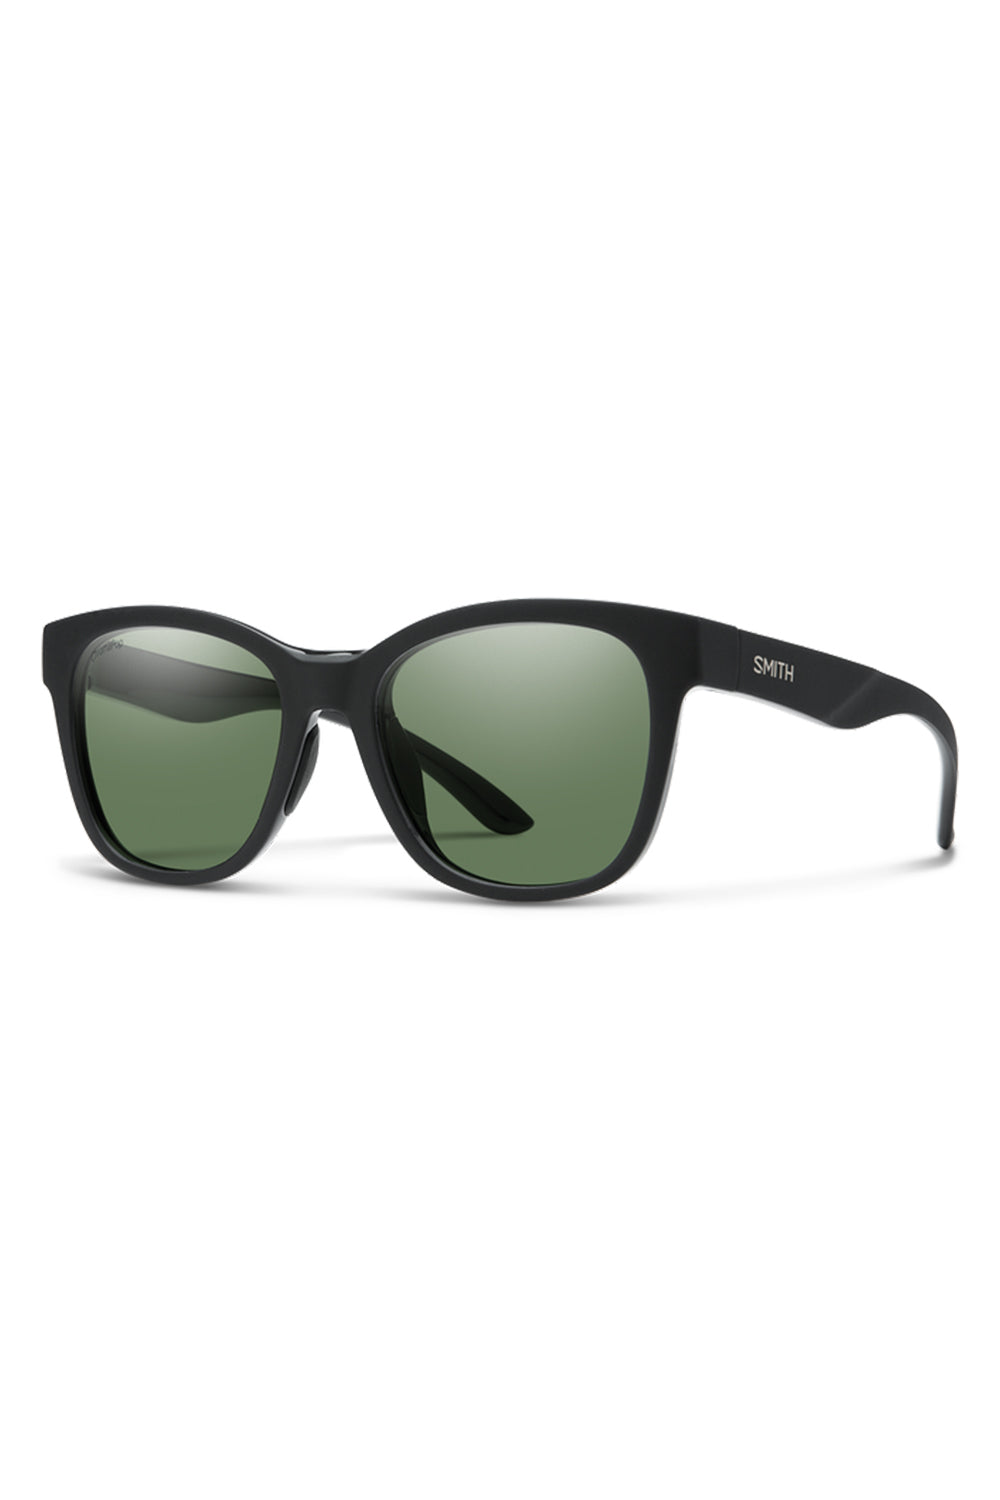 Smith Optics Caper Sunglasses